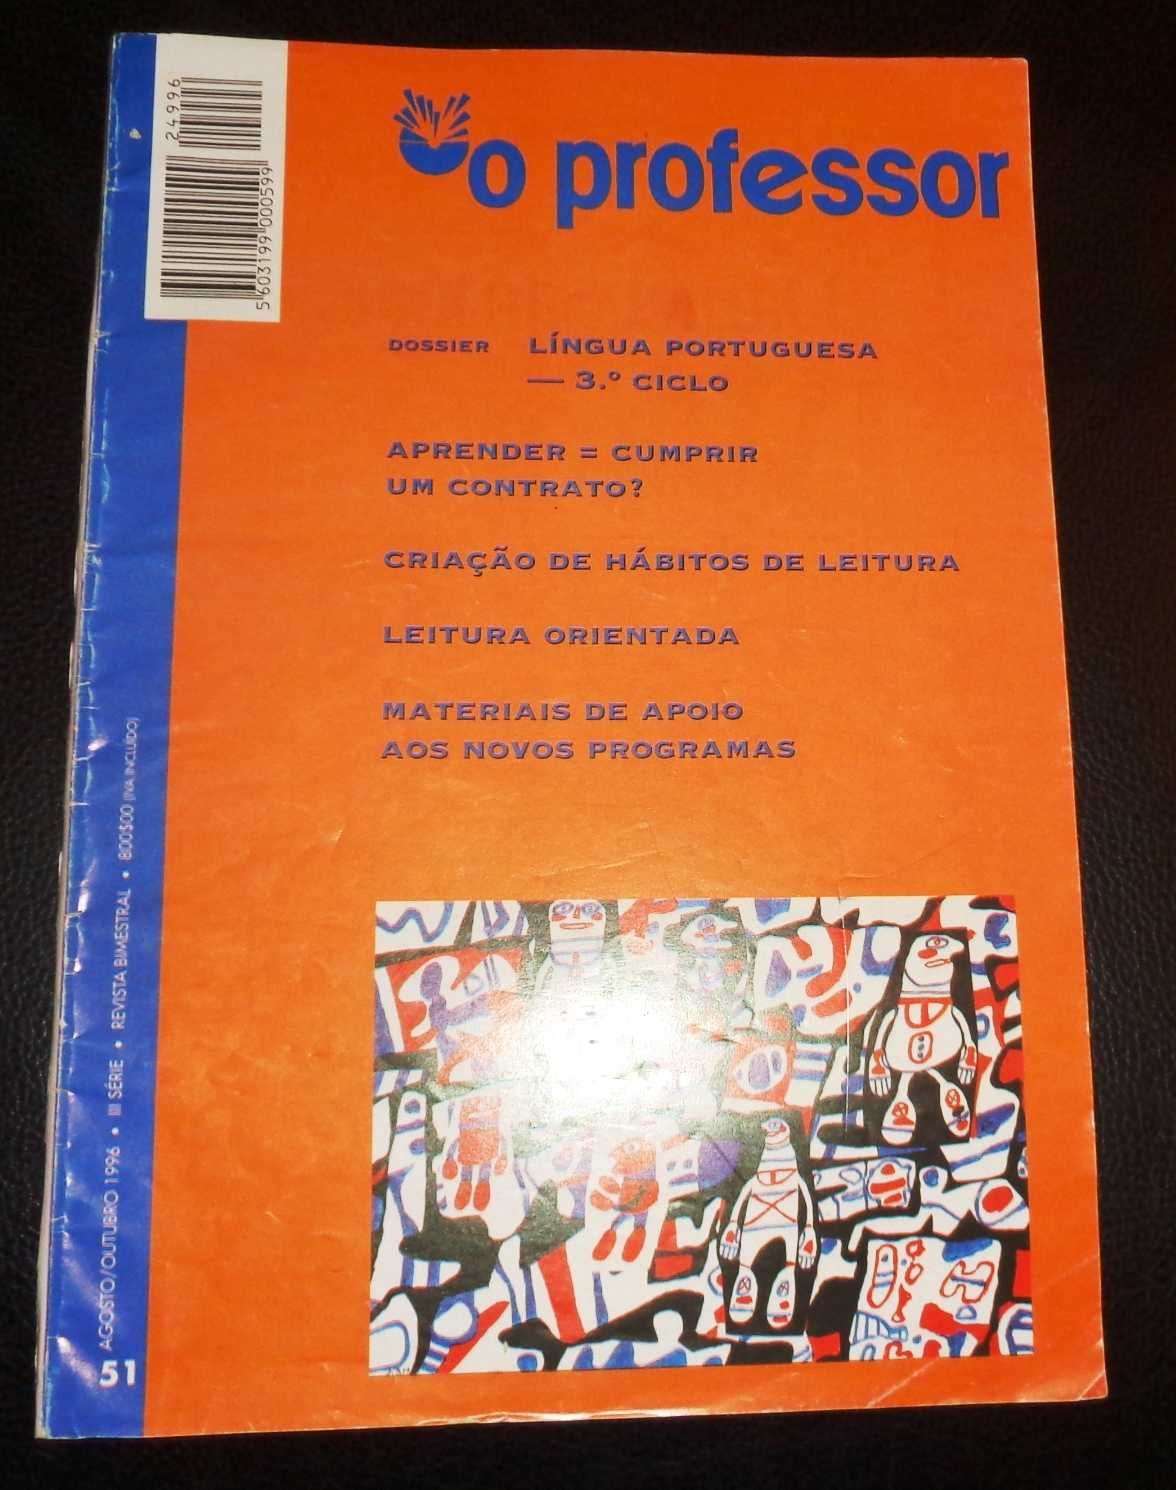 Revista "O Professor" e separata da revista "Dirigir"